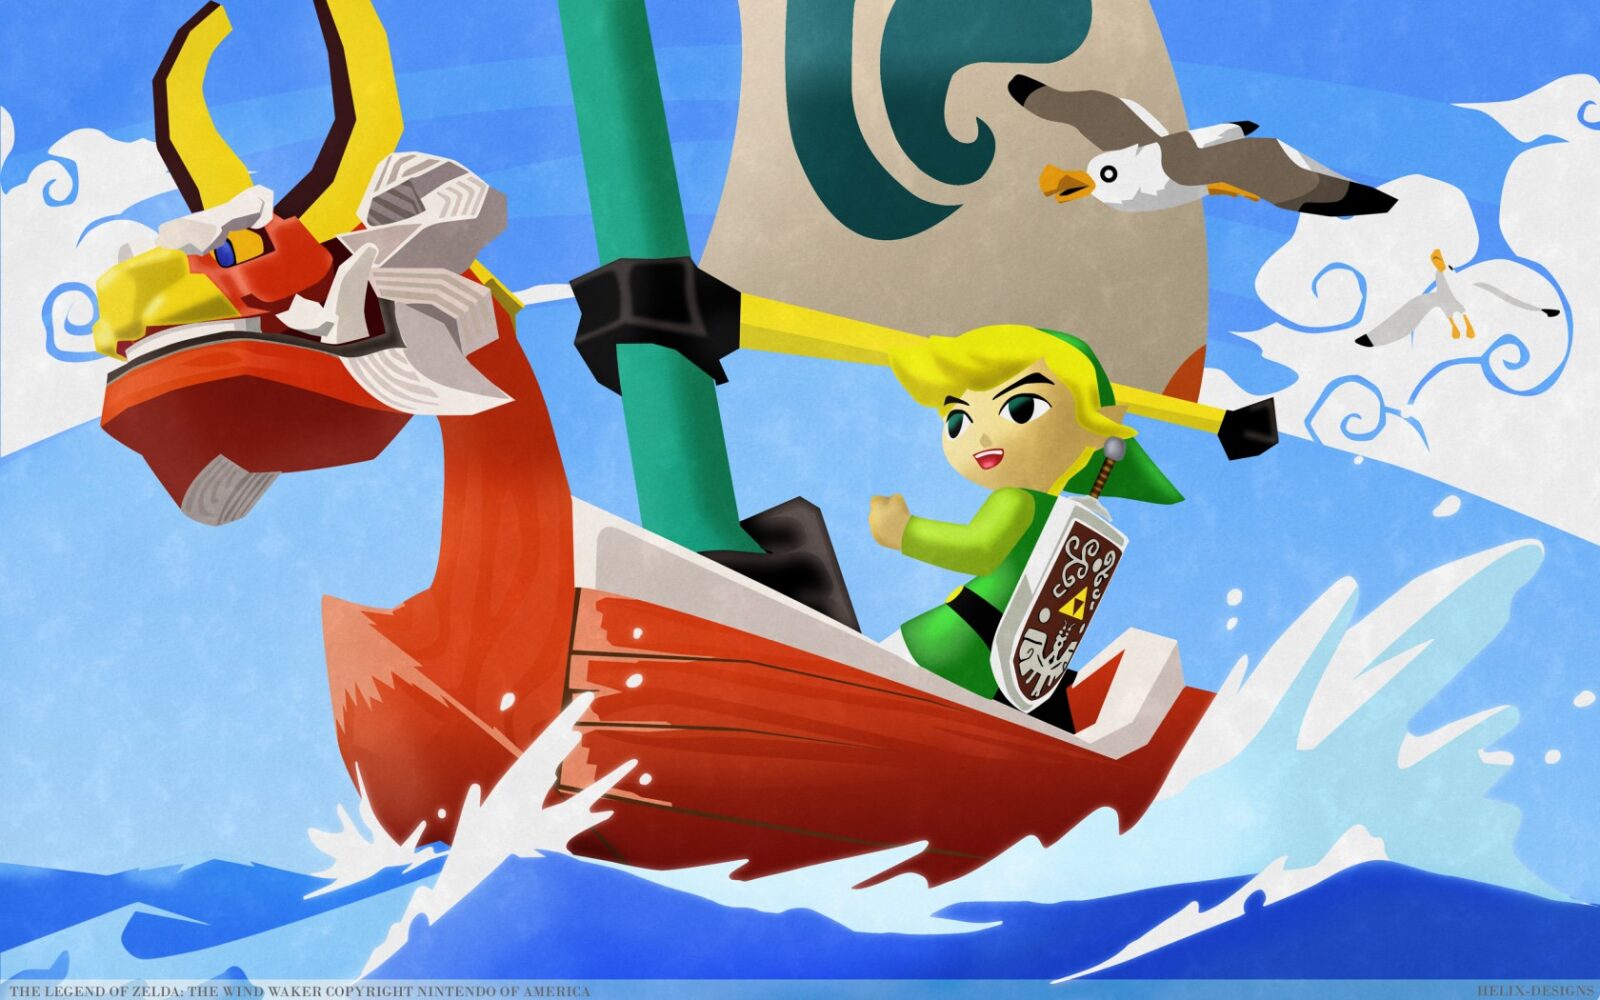 [Rumor] The Legend of Zelda: Wind Waker e Phantom Hourglass podem estar a caminho do Switch